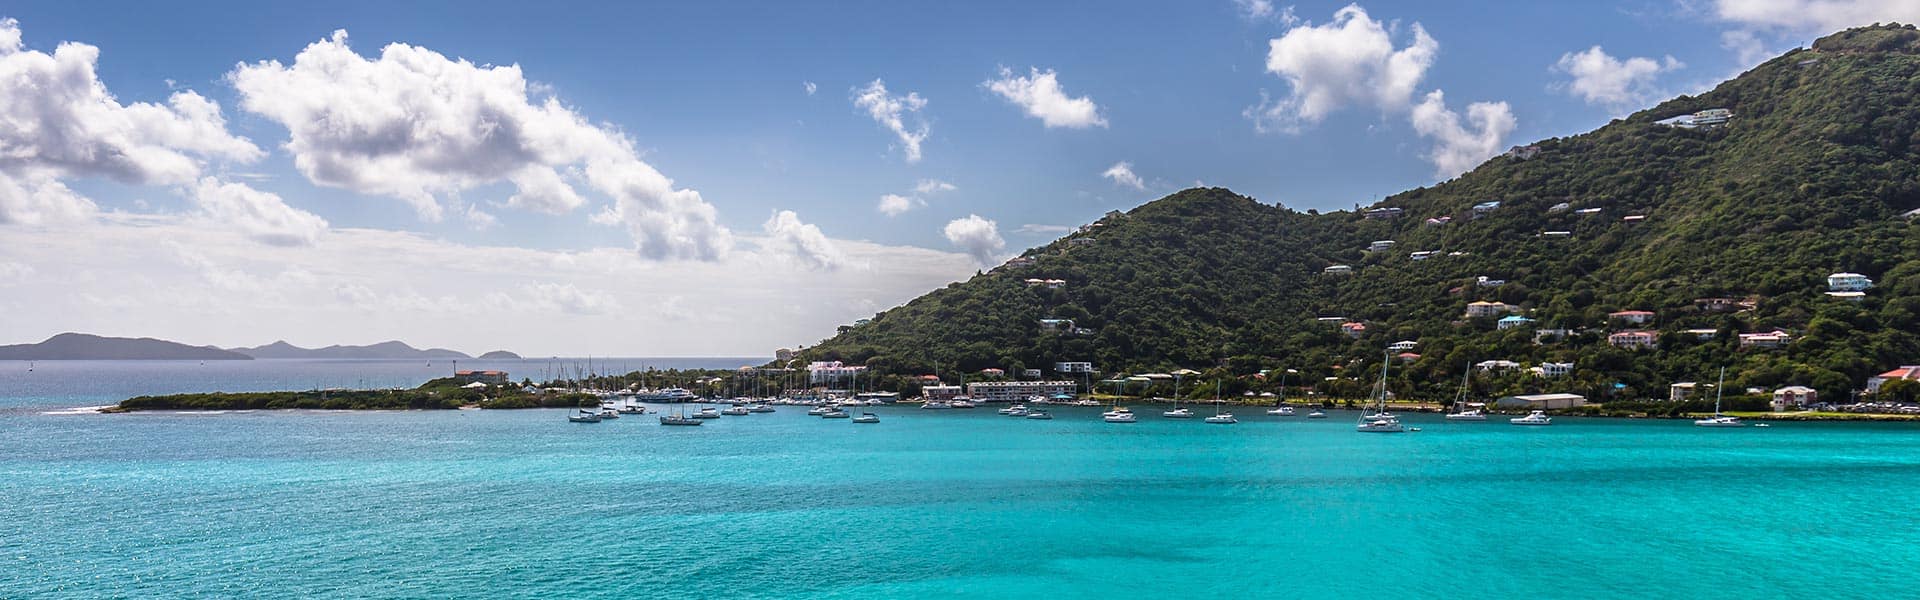 Caraibi: Great Stirrup Cay e Repubblica Domenicana